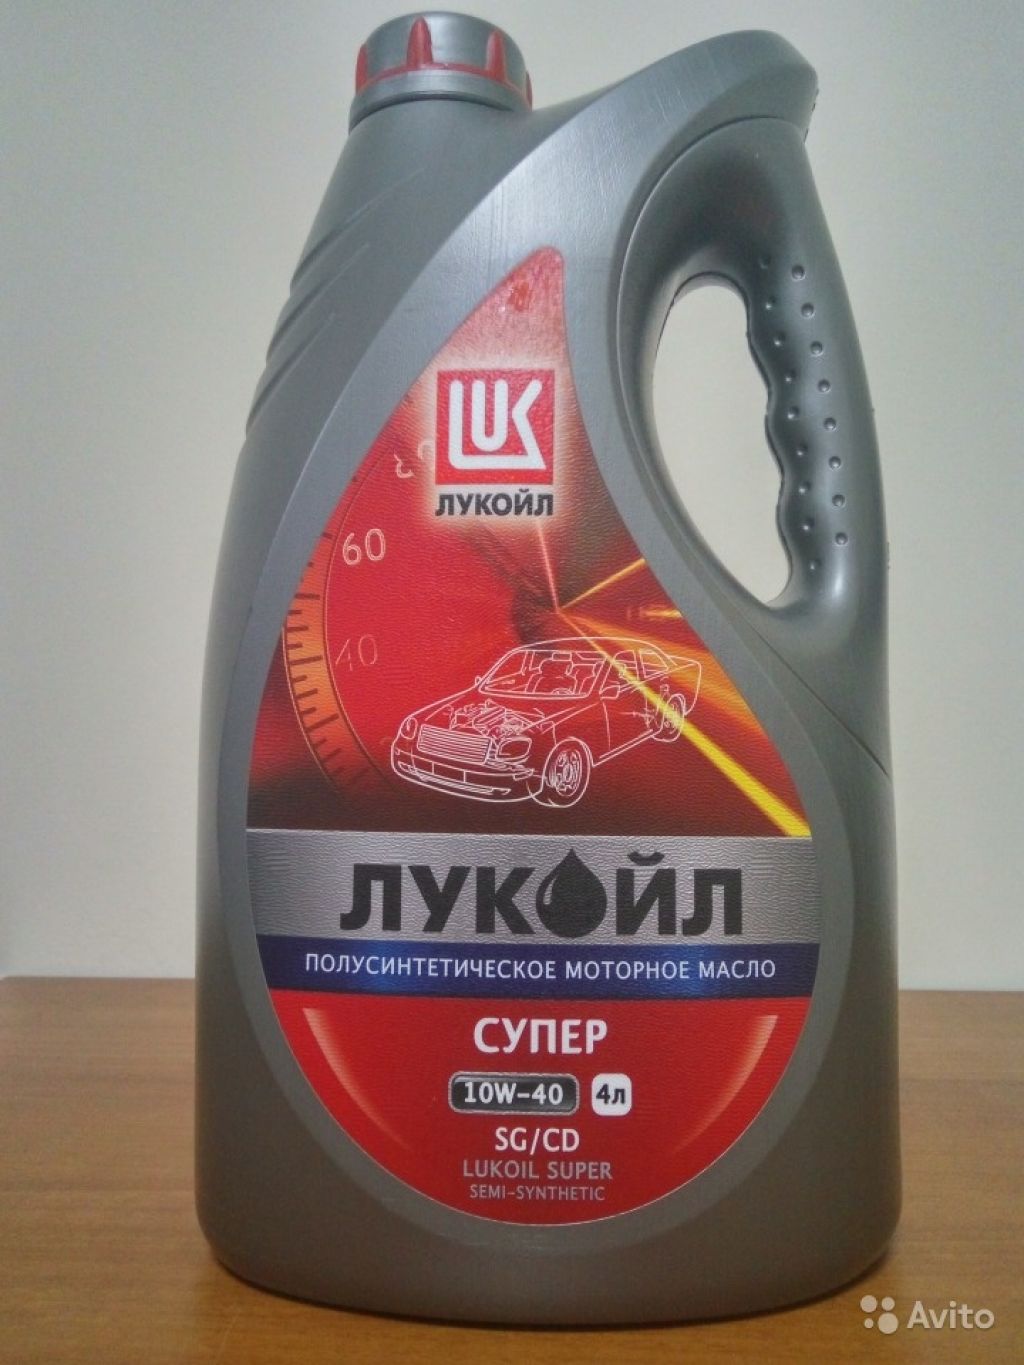 Lukoil 19192. Московское моторное масло. Автокосметика Лукойл. 19191 Лукойл. Масло 10w 40 цена 4 литра лукойл